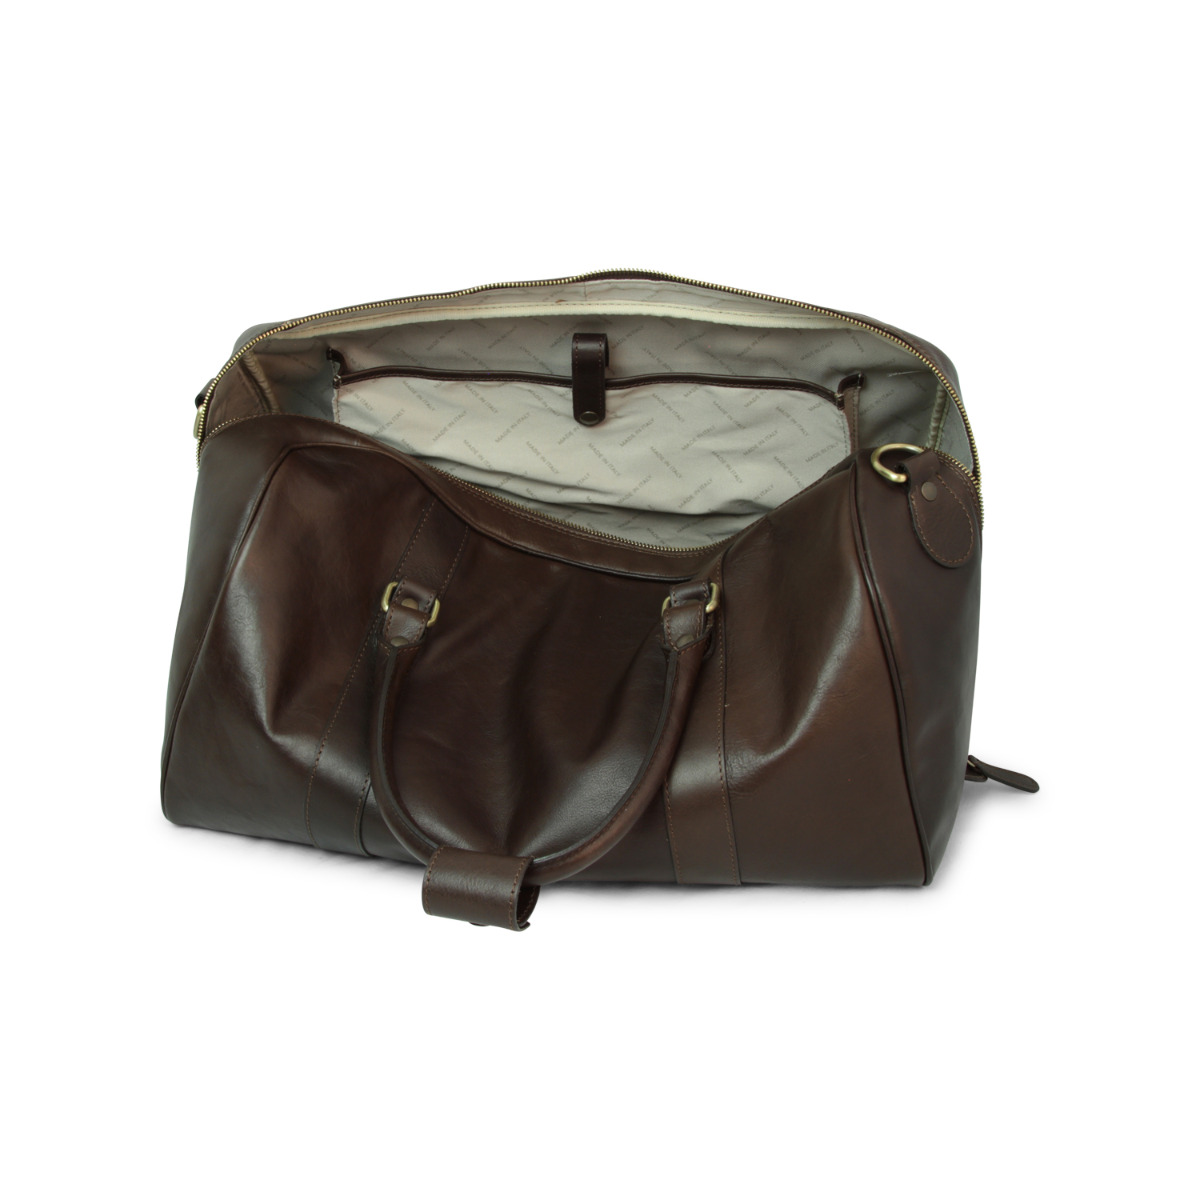 Full grain leather travel bag - dark brown|414891TM|Old Angler Firenze